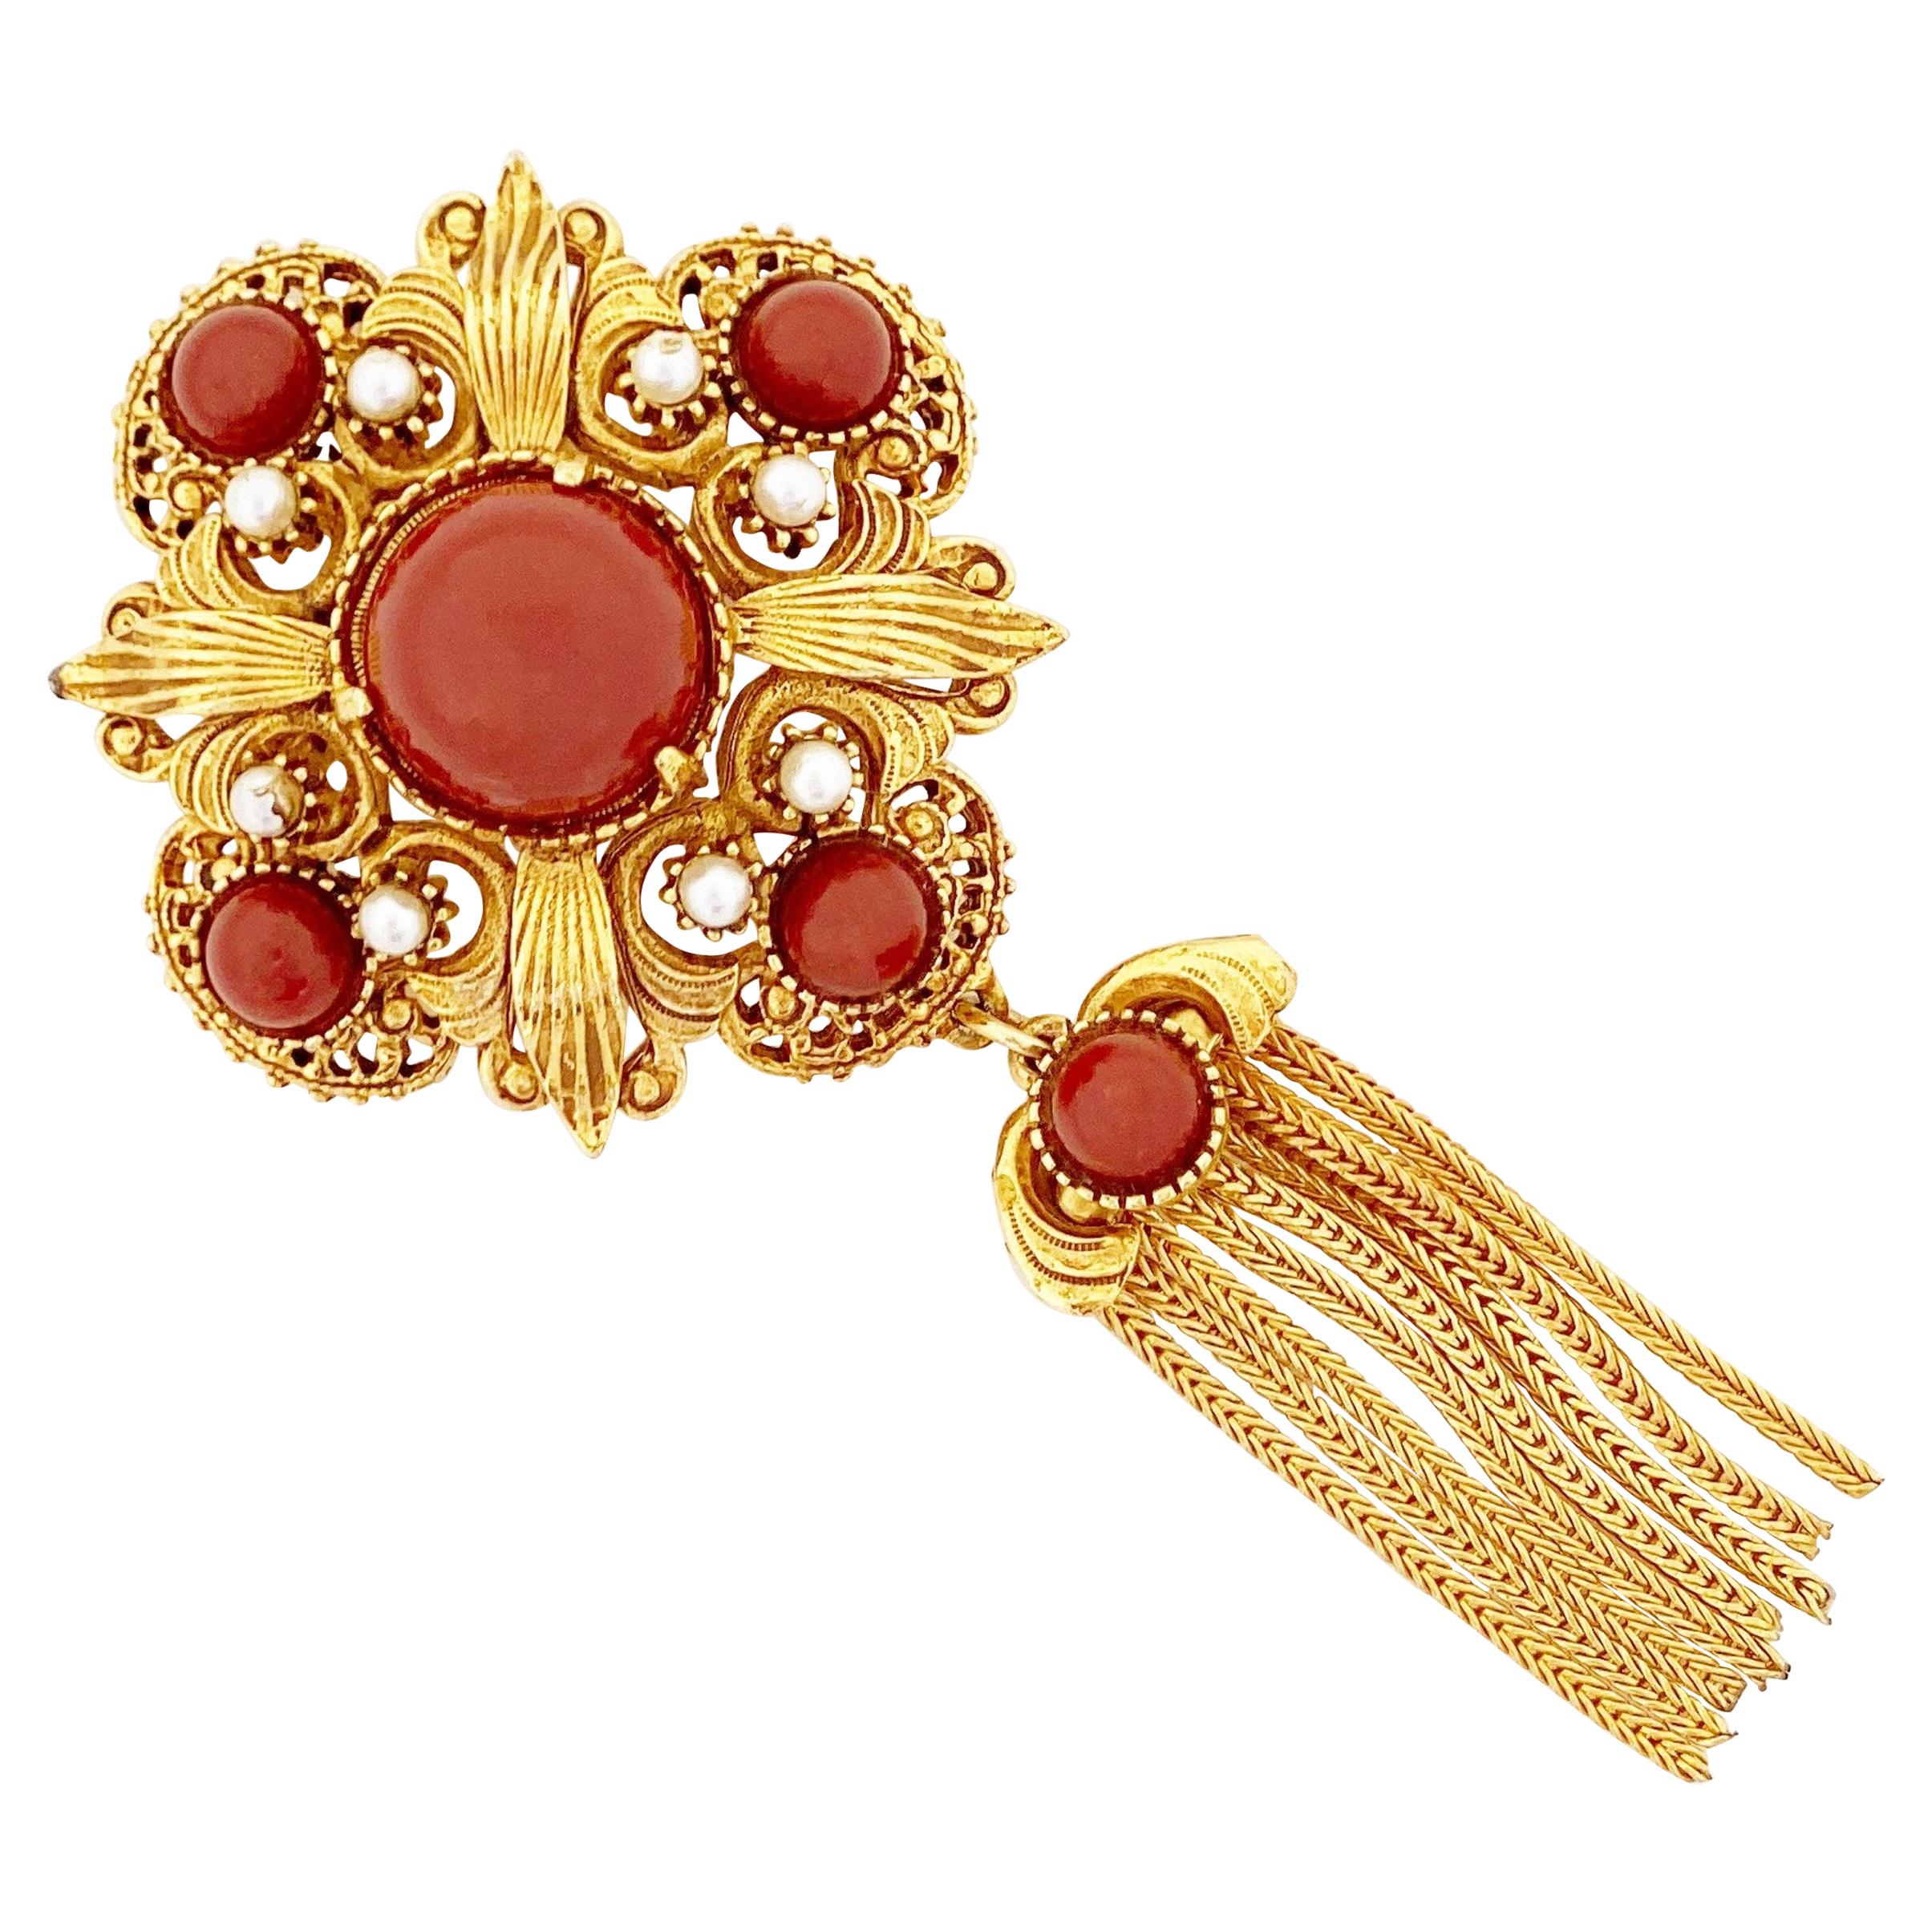 Ornate Medallion Brooch w Red Cabochons & Gold Fringe Tassel By Florenza, 1970s